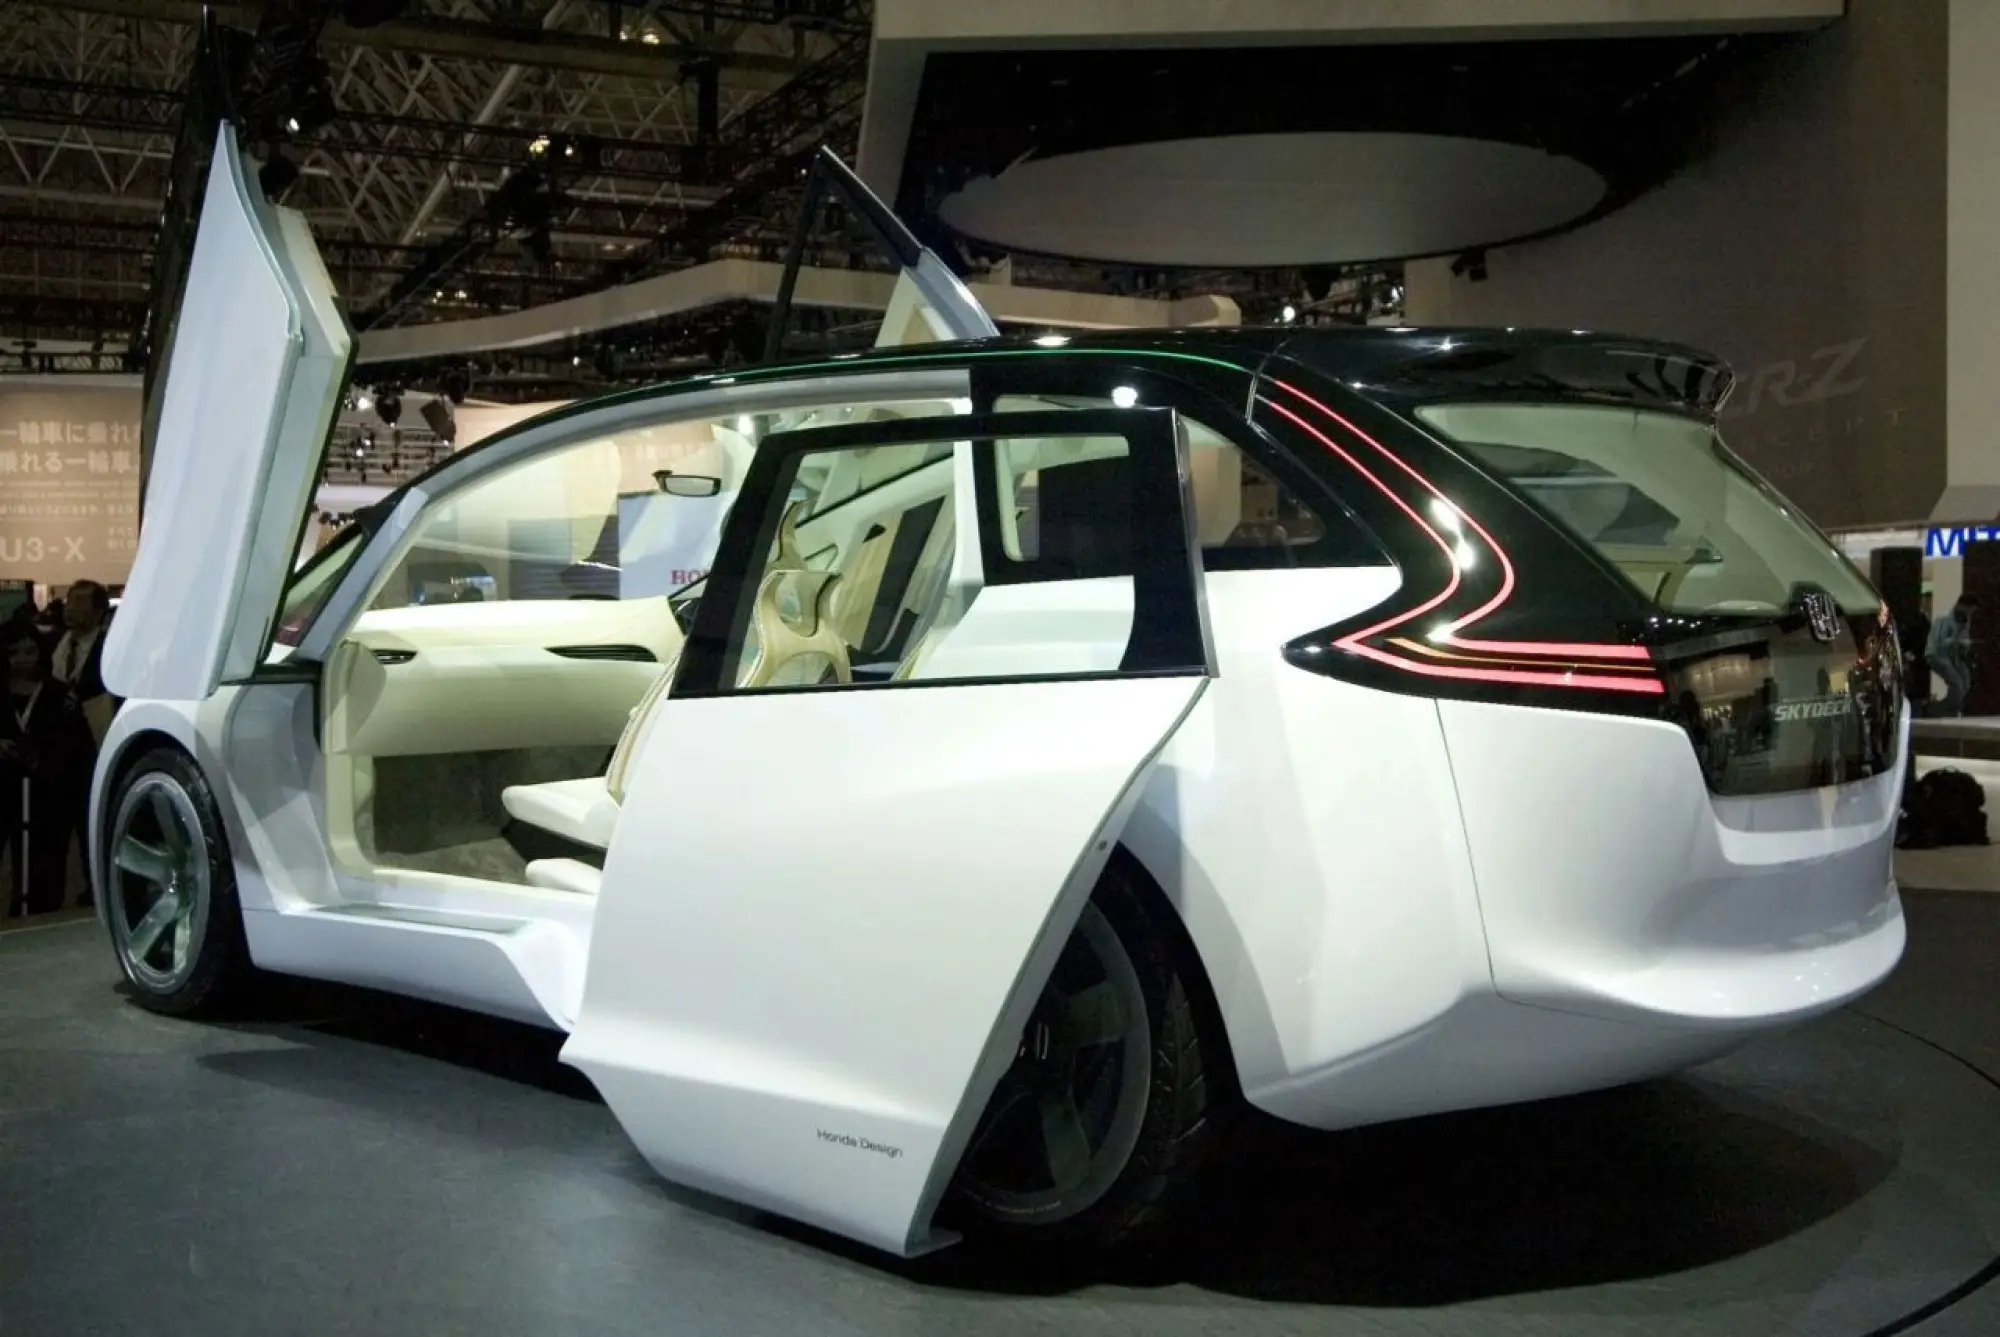 Honda Skydeck Concept a Tokyo - 7